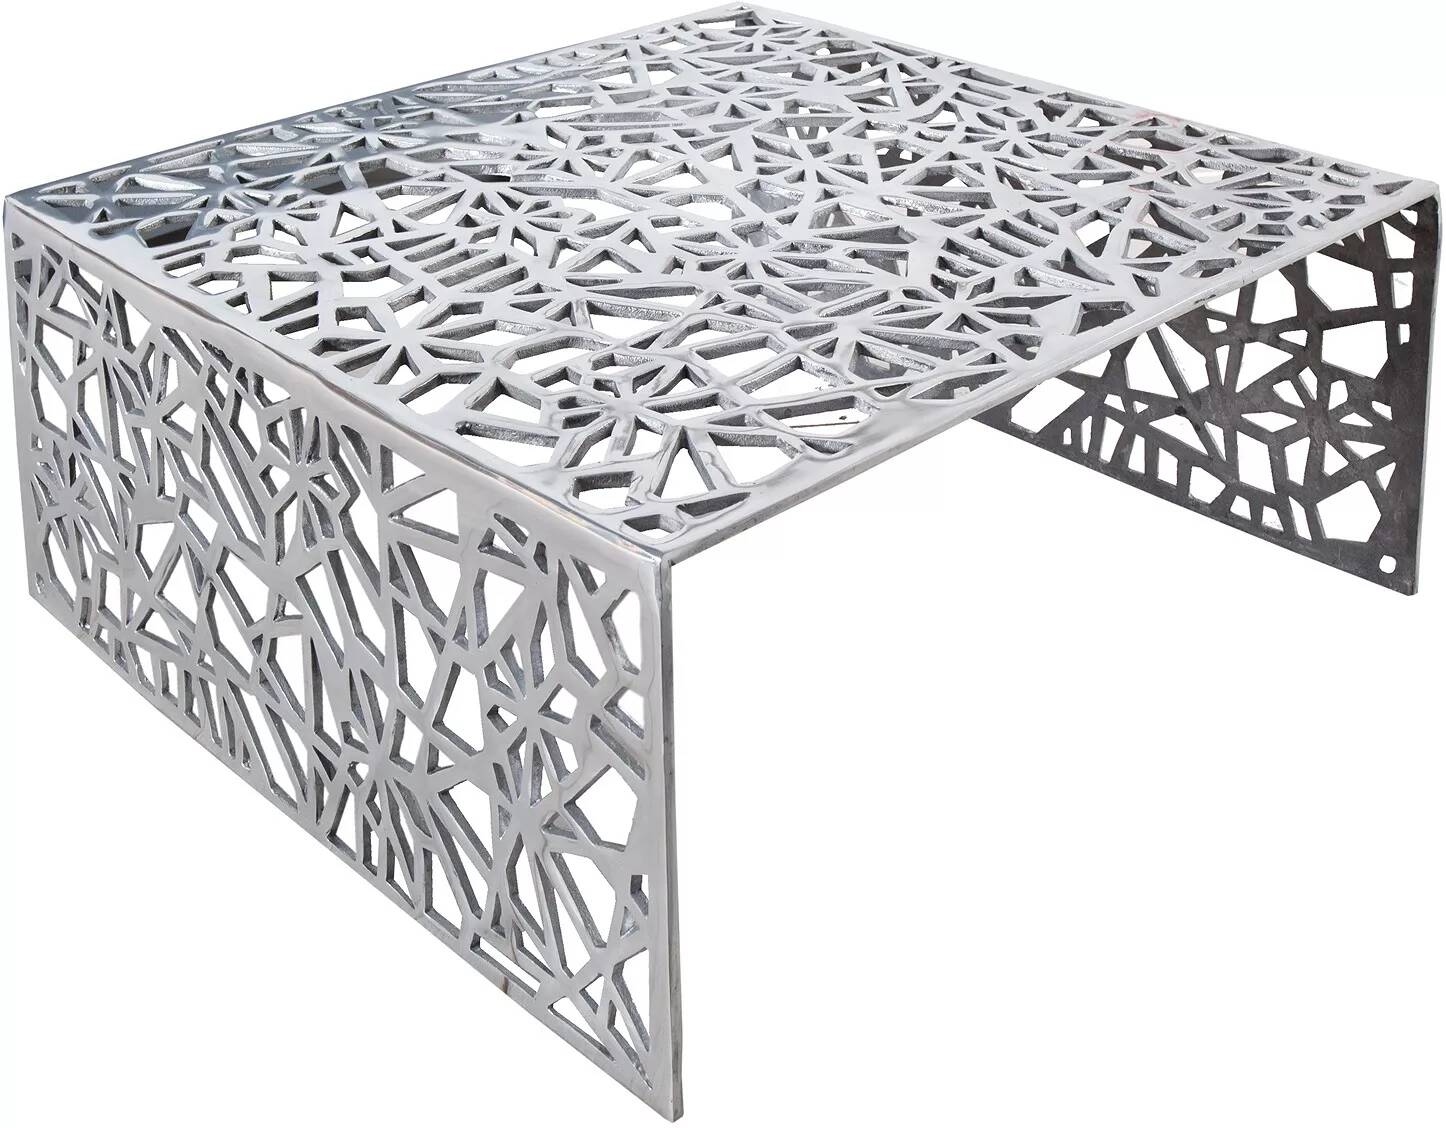 Table basse design en aluminium argenté L60